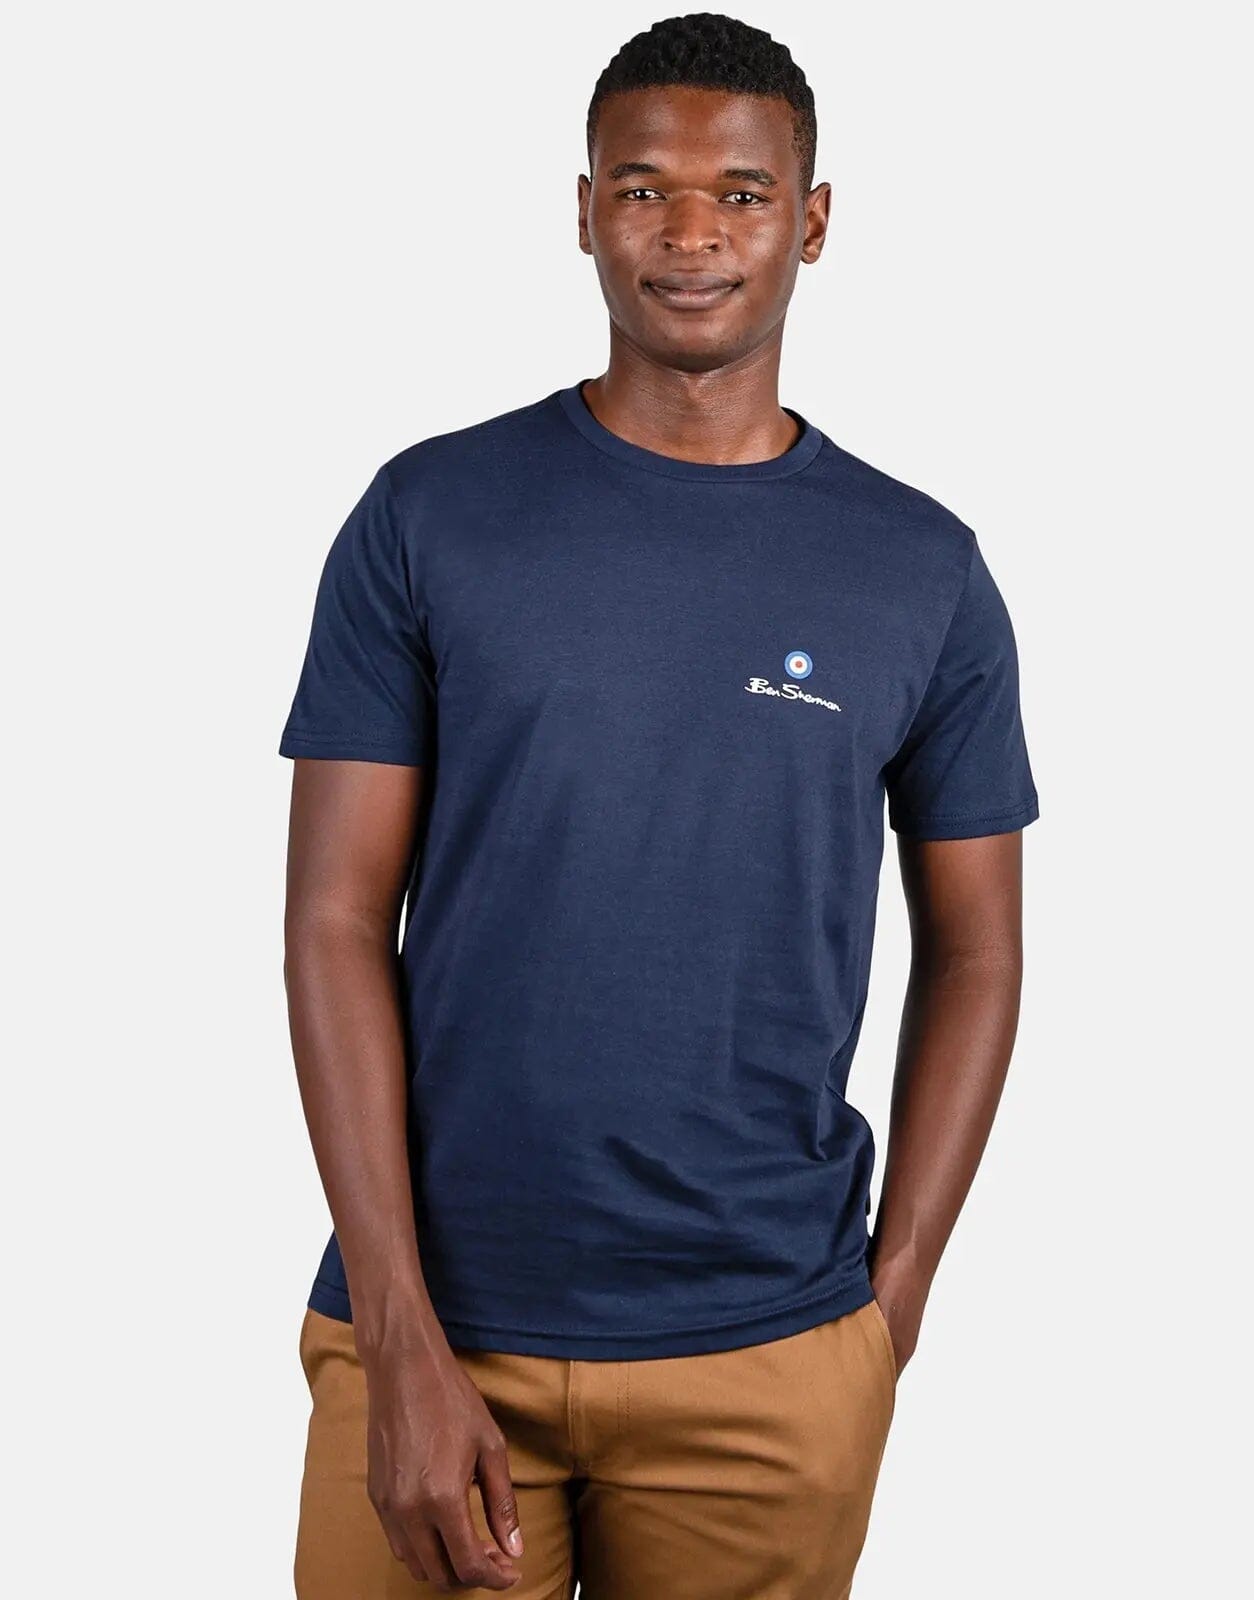 Ben Sherman Blue Target Print T-Shirt - Subwear